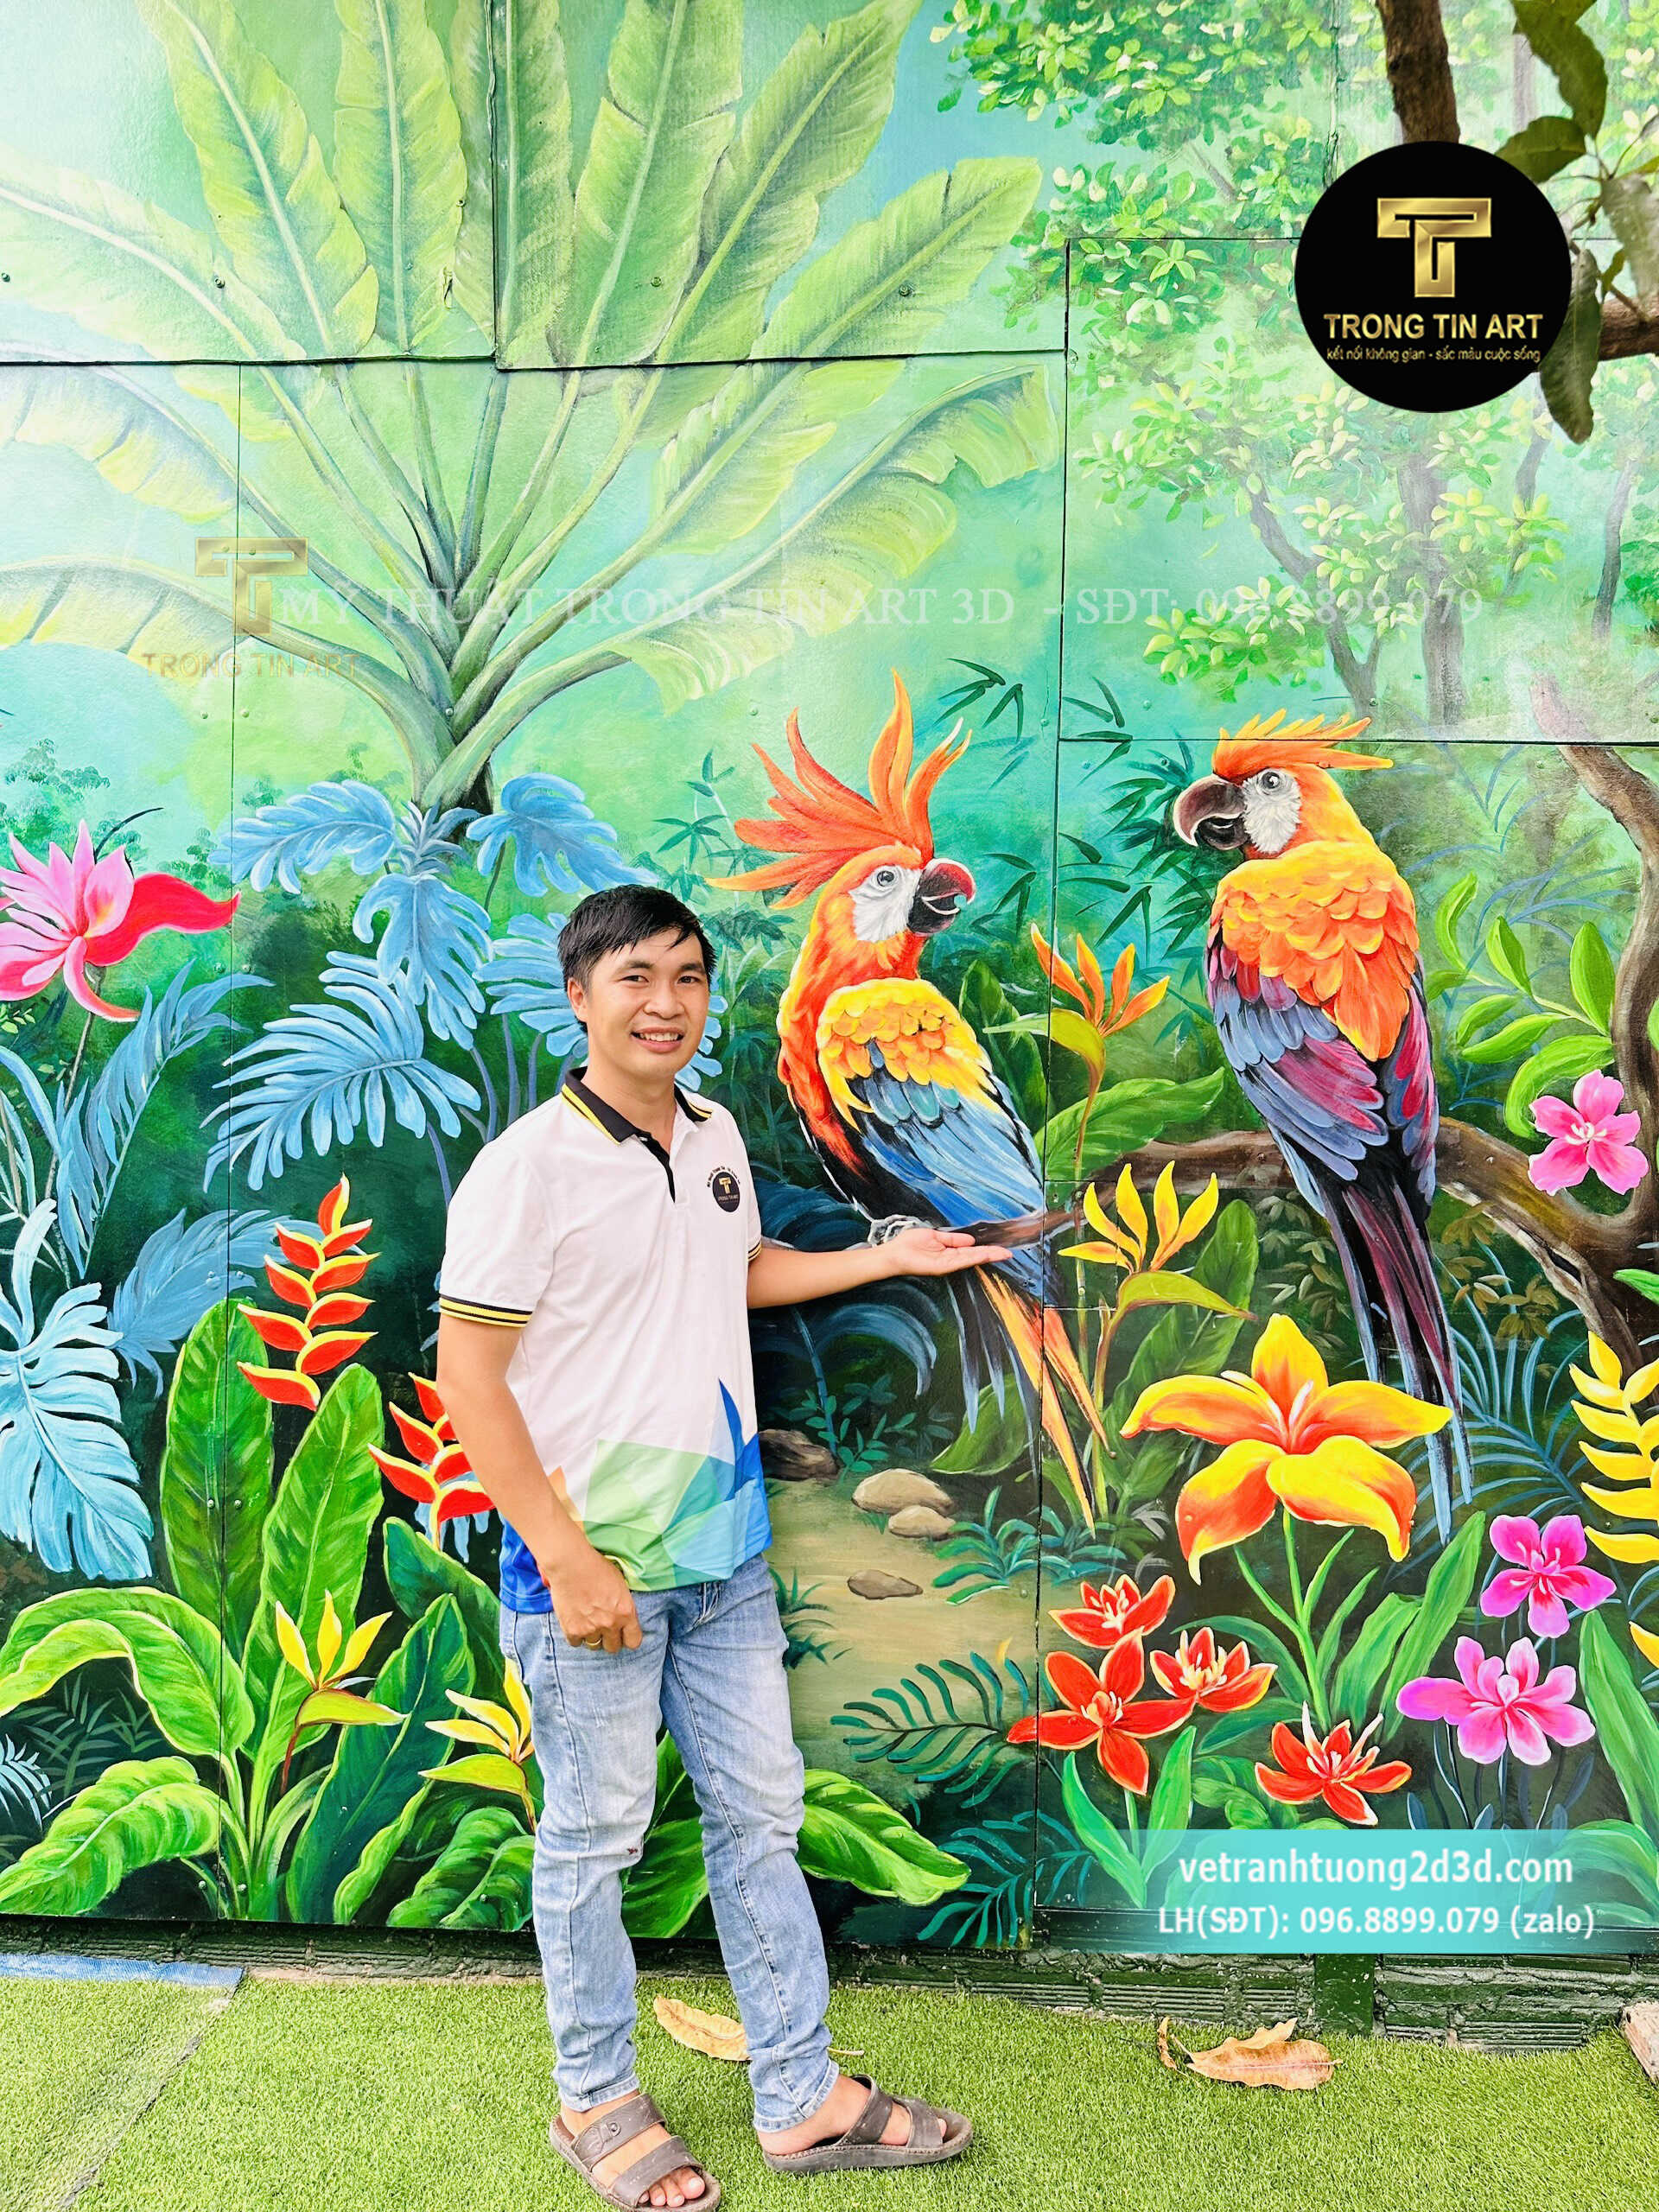 Vẽ Tranh Tường 3D Chekin,tranh chụp hình chekin,vẽ tranh cửa cuốn,vẽ tranh hoa lá,tranh tropical,tranh rừng nhiệt đới,vẽ tranh 3d